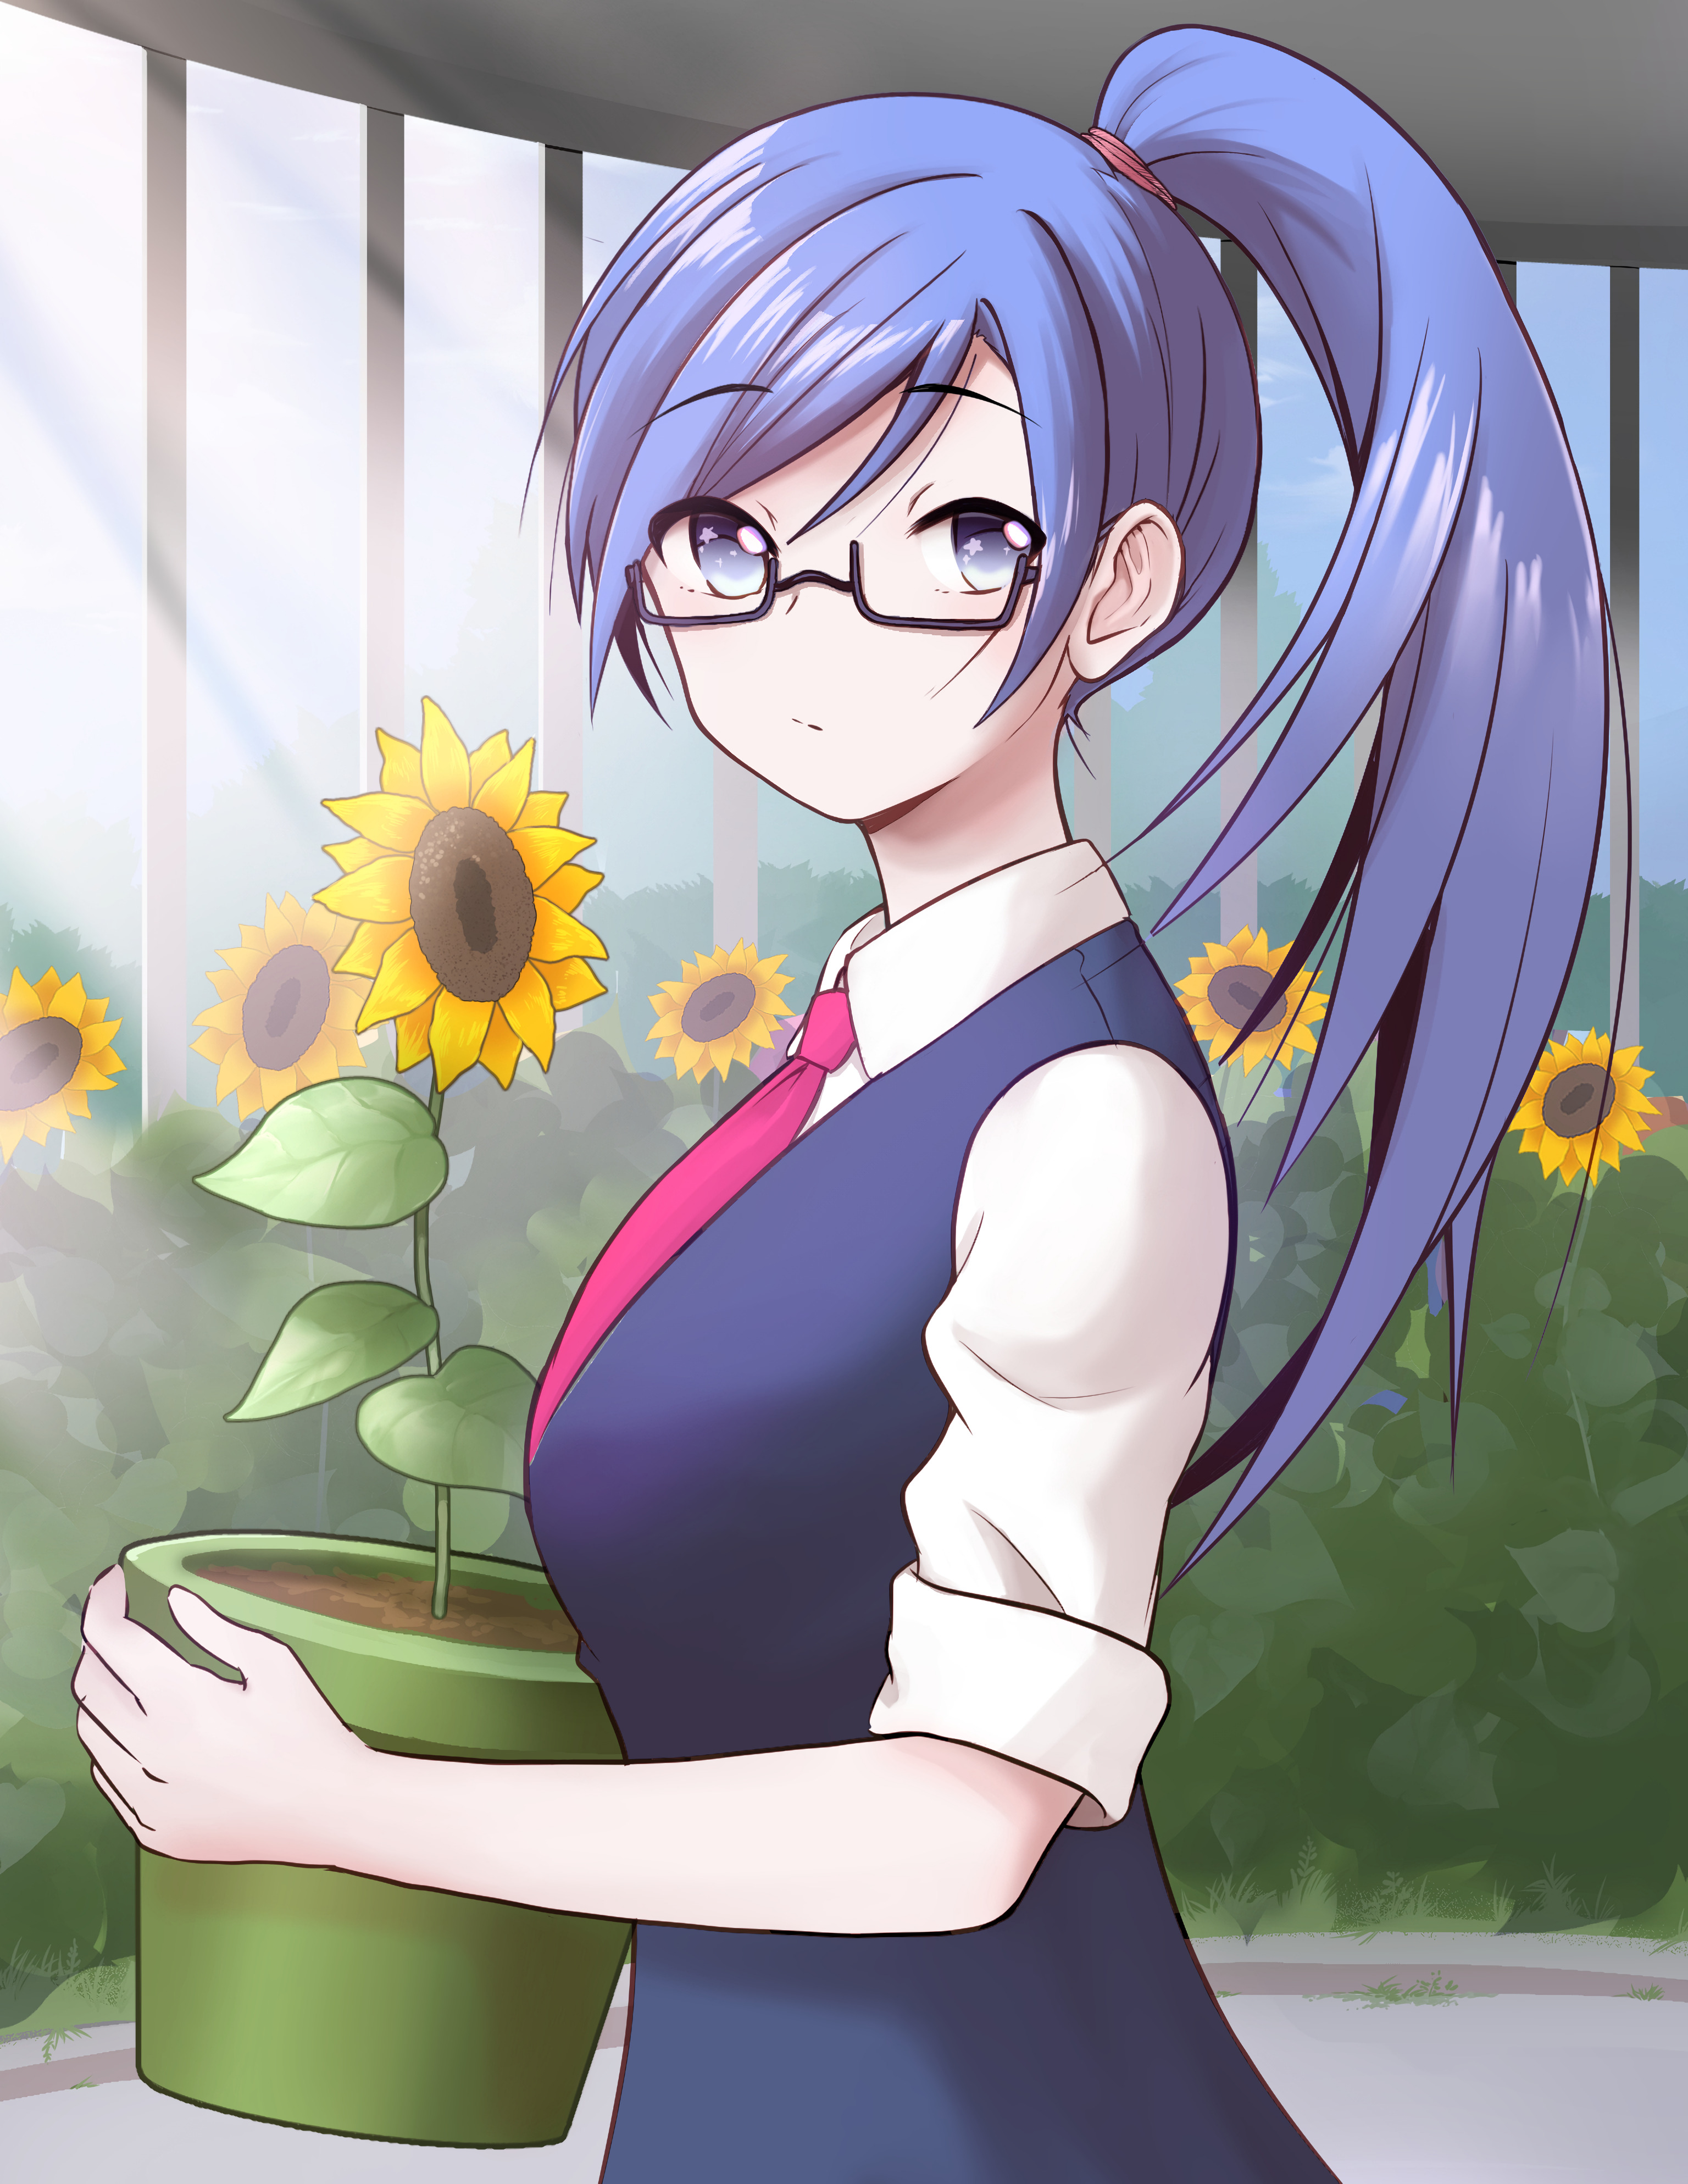 Spectacles glasses, flowers, anime, sunflowers 4k Wallpaper